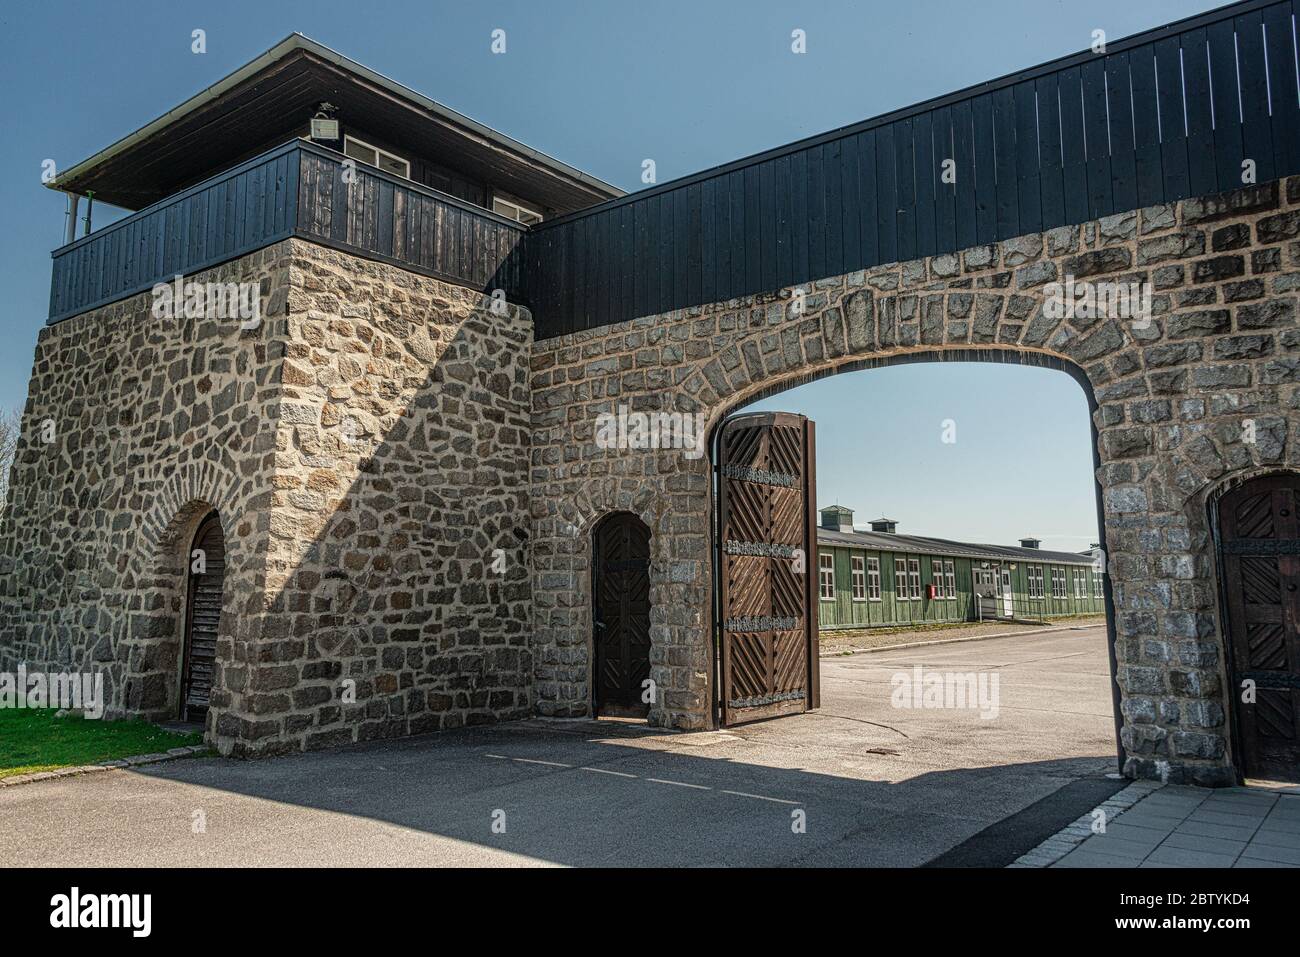 KZ Memorial mauthausen, Monument aux victimes dans le camp de concentration de la Nouvelle-Écosse, dans la 2ème Guerre mondiale Banque D'Images